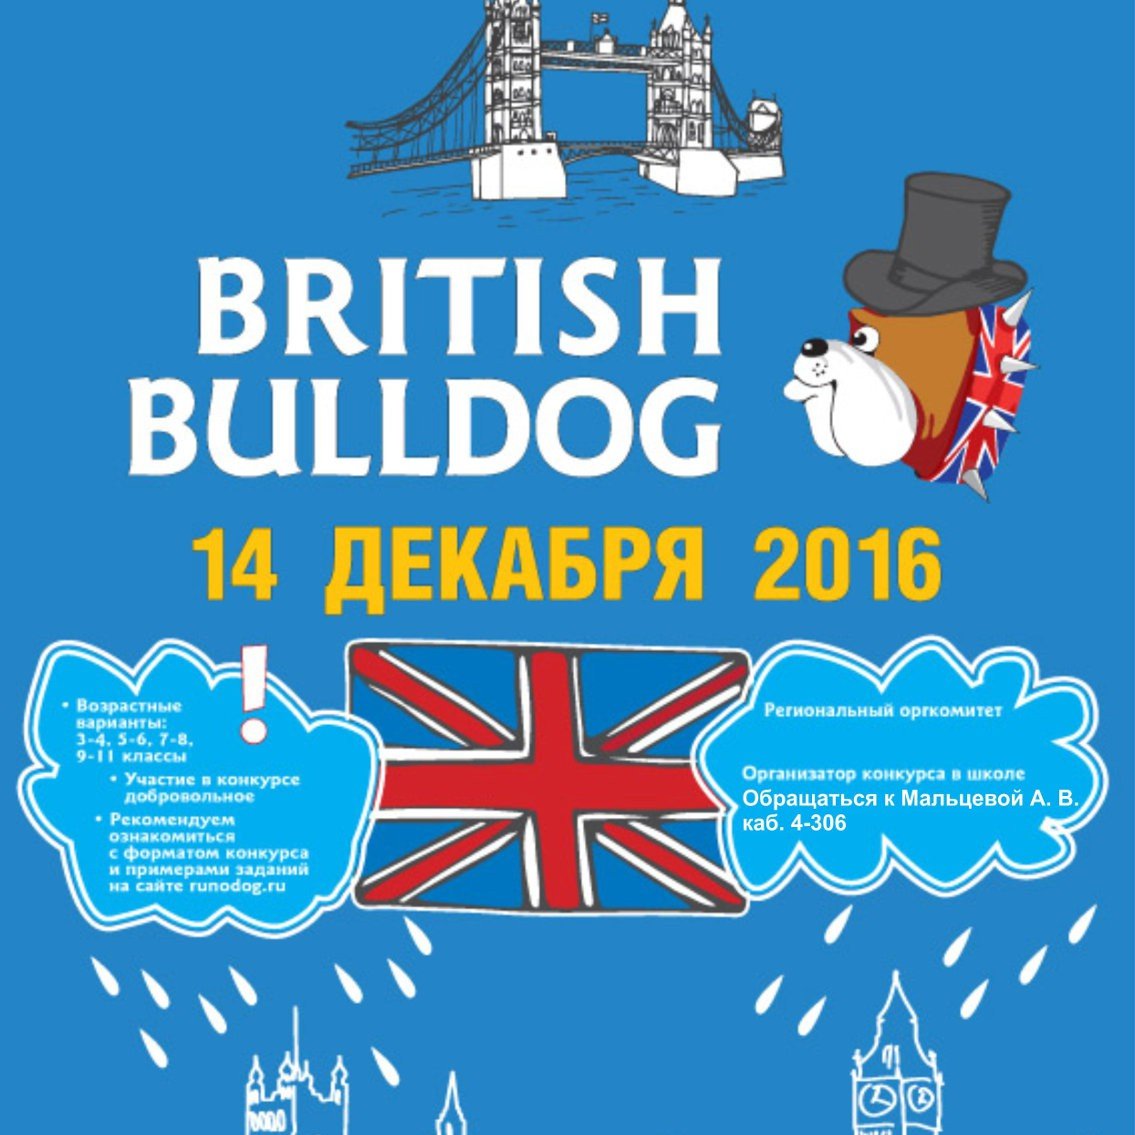 Бульдог конкурс по английскому языку. British Bulldog (британский бульдог). Британский бульдог конкурс. British Bulldog конкурс по английскому.